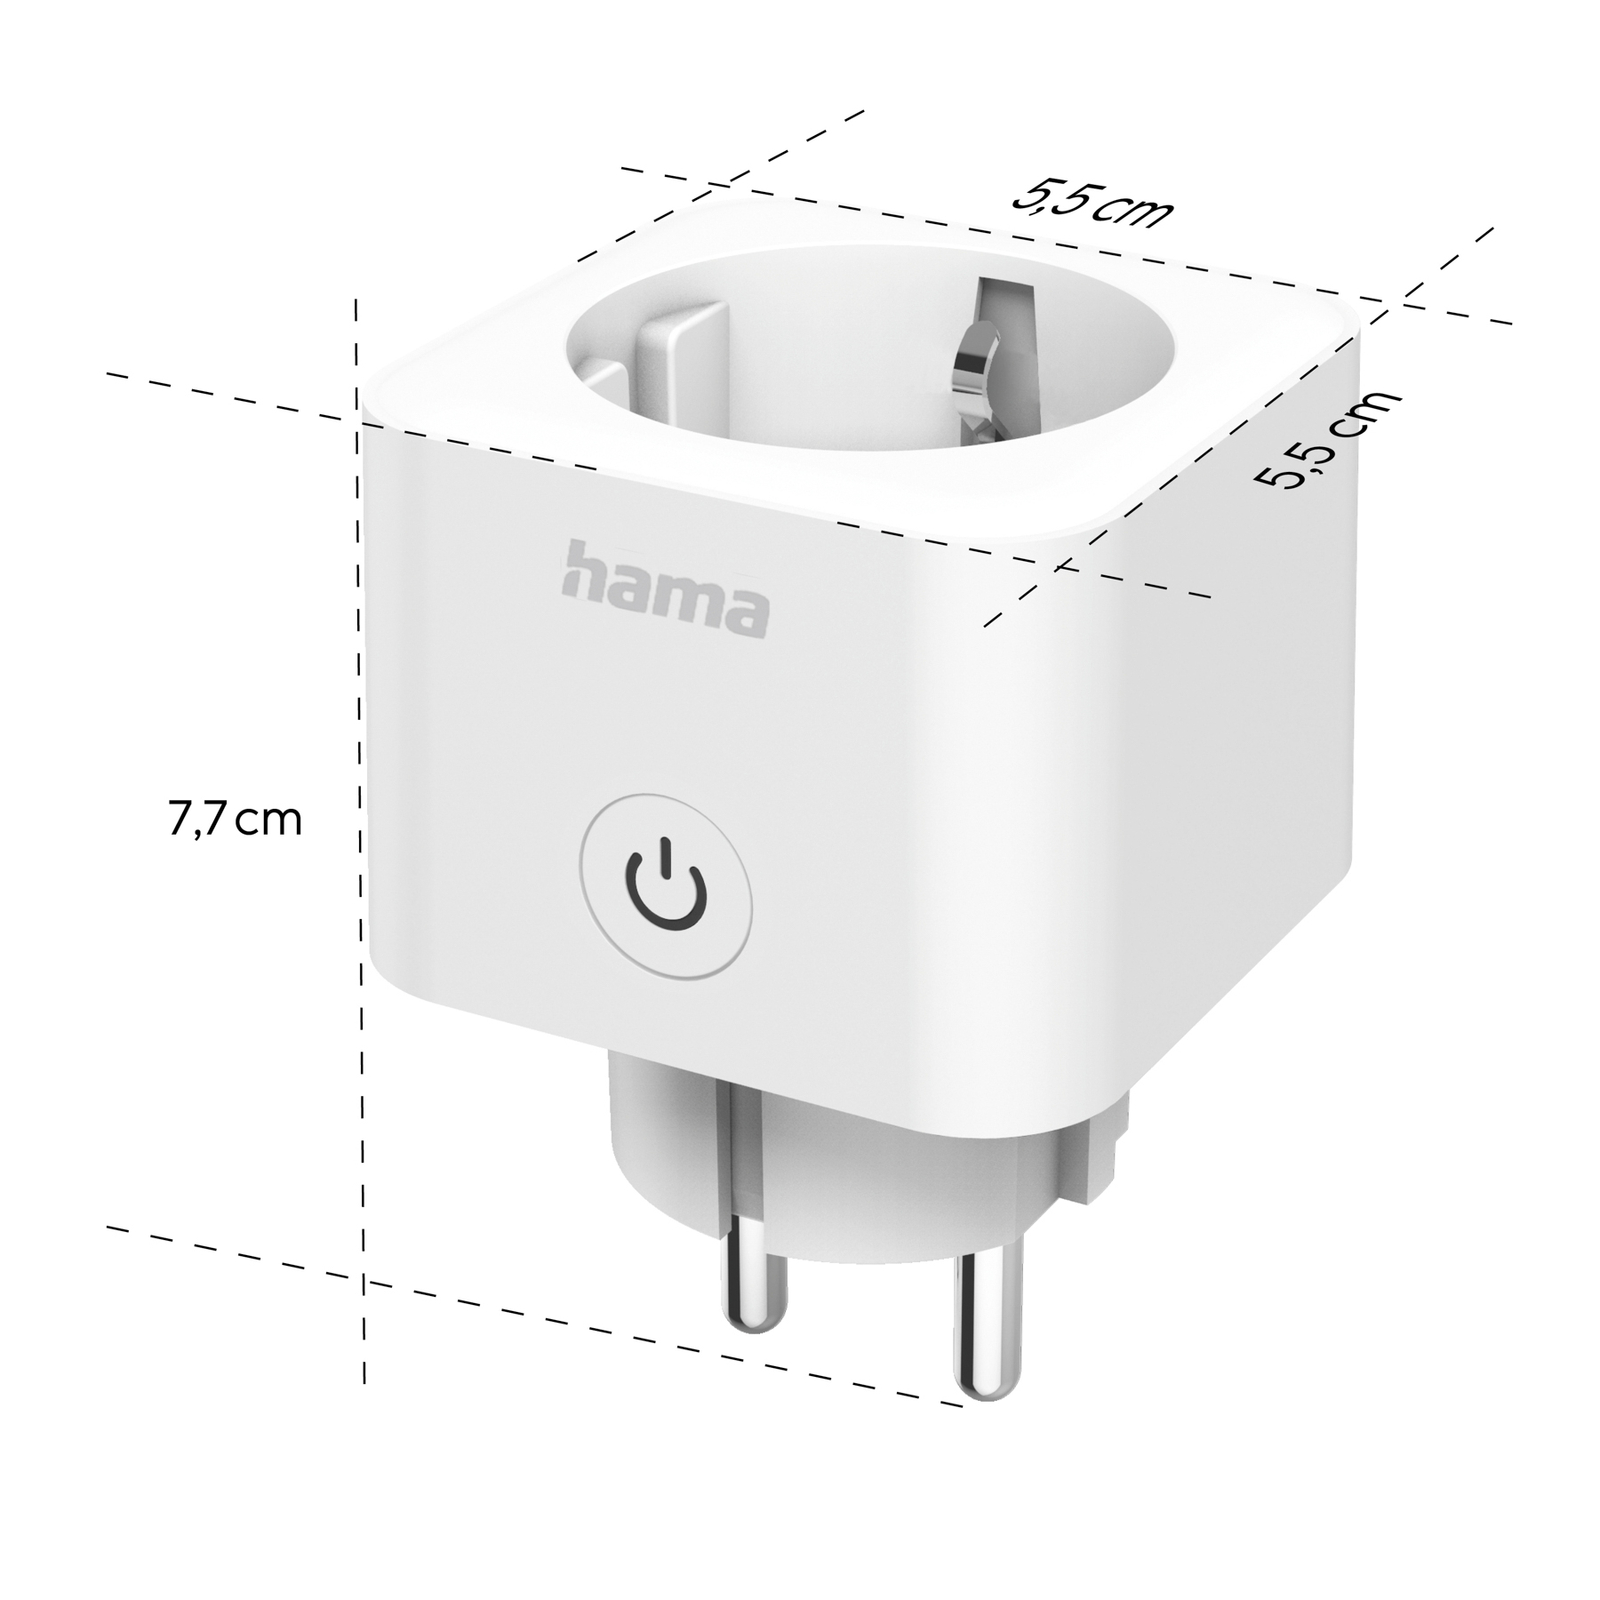 Hama WLAN wandcontactdoos Smart, geschikt voor Matter, wit, 3,680 W